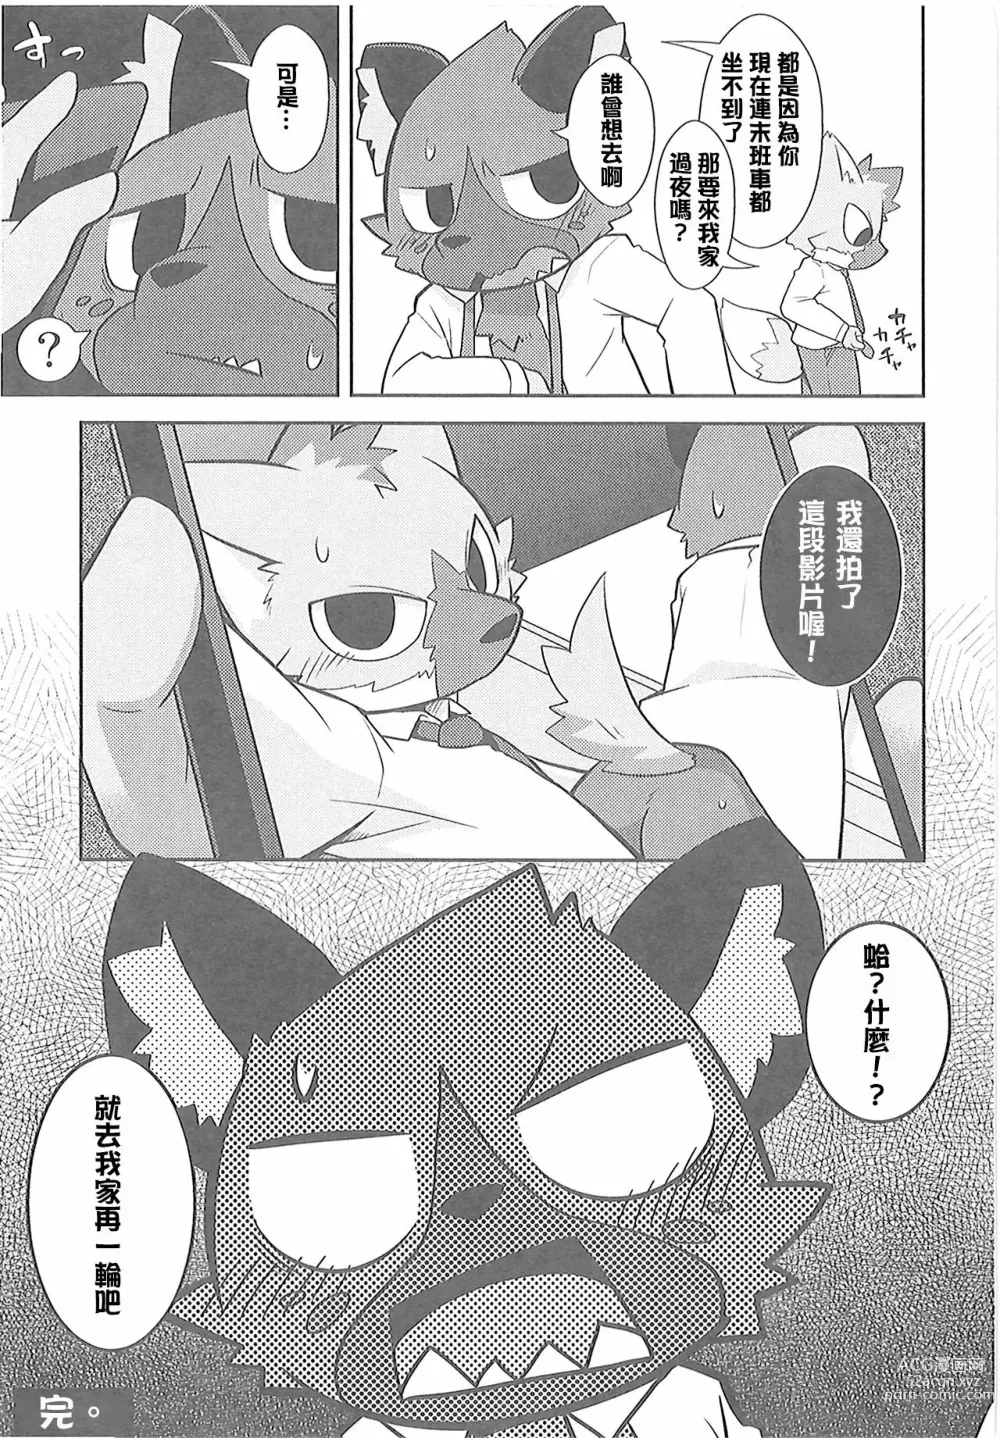 Page 16 of doujinshi 午夜的工作